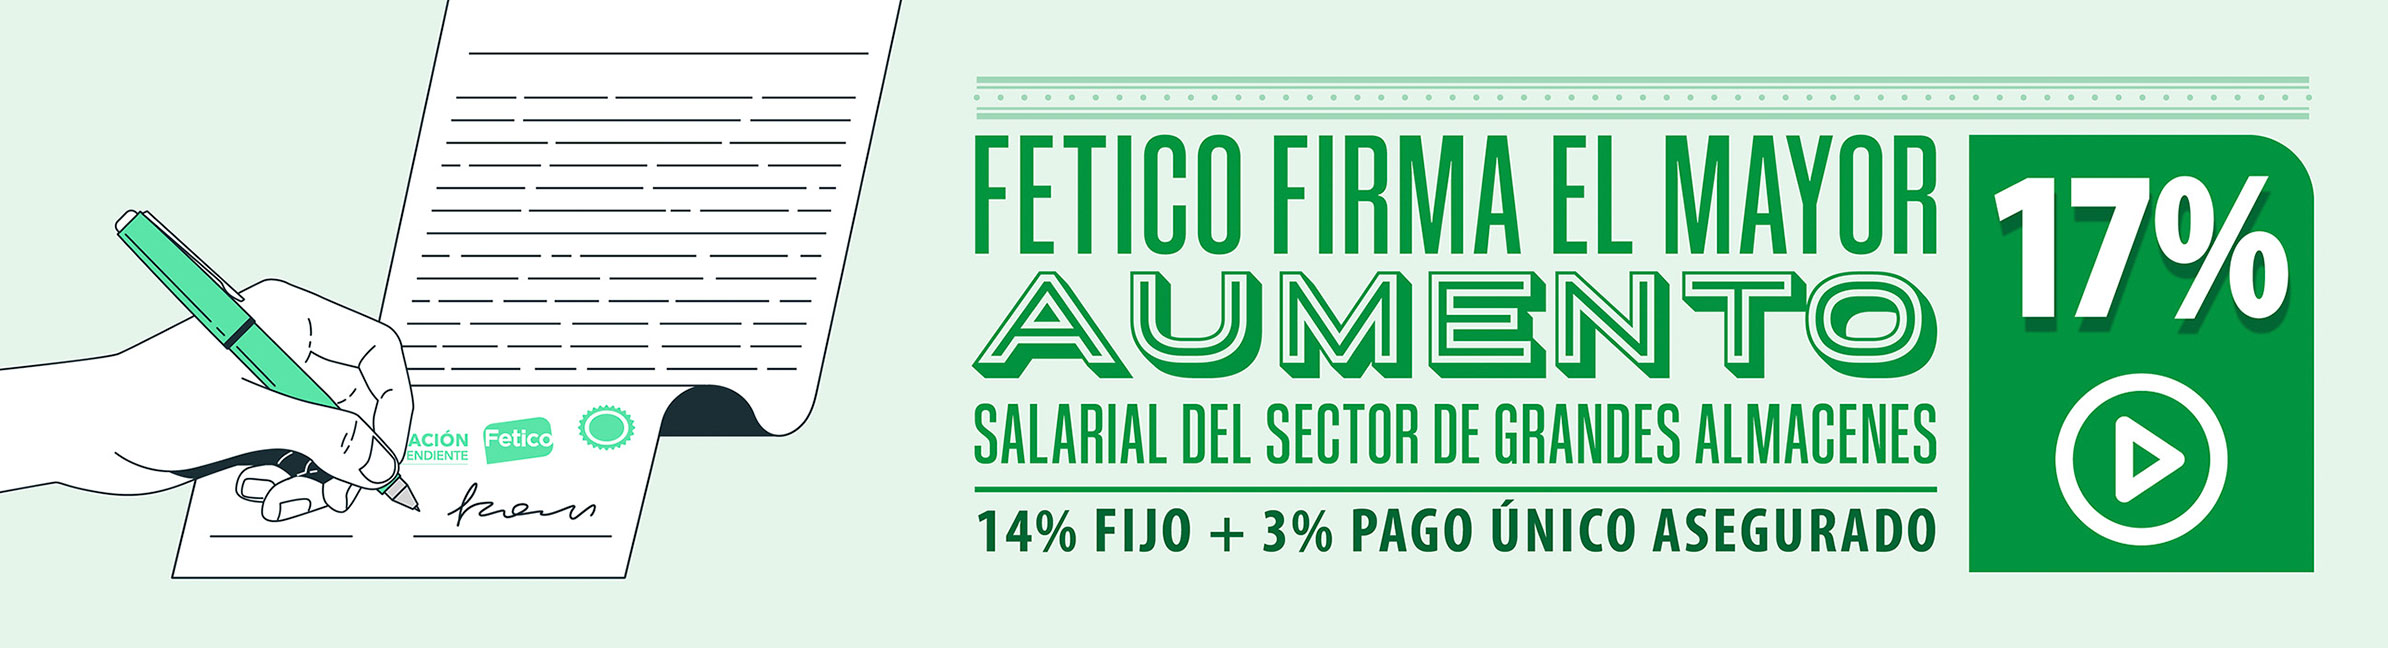 Fetico firma el mayor aumento salarial del sector de grandes almacenes